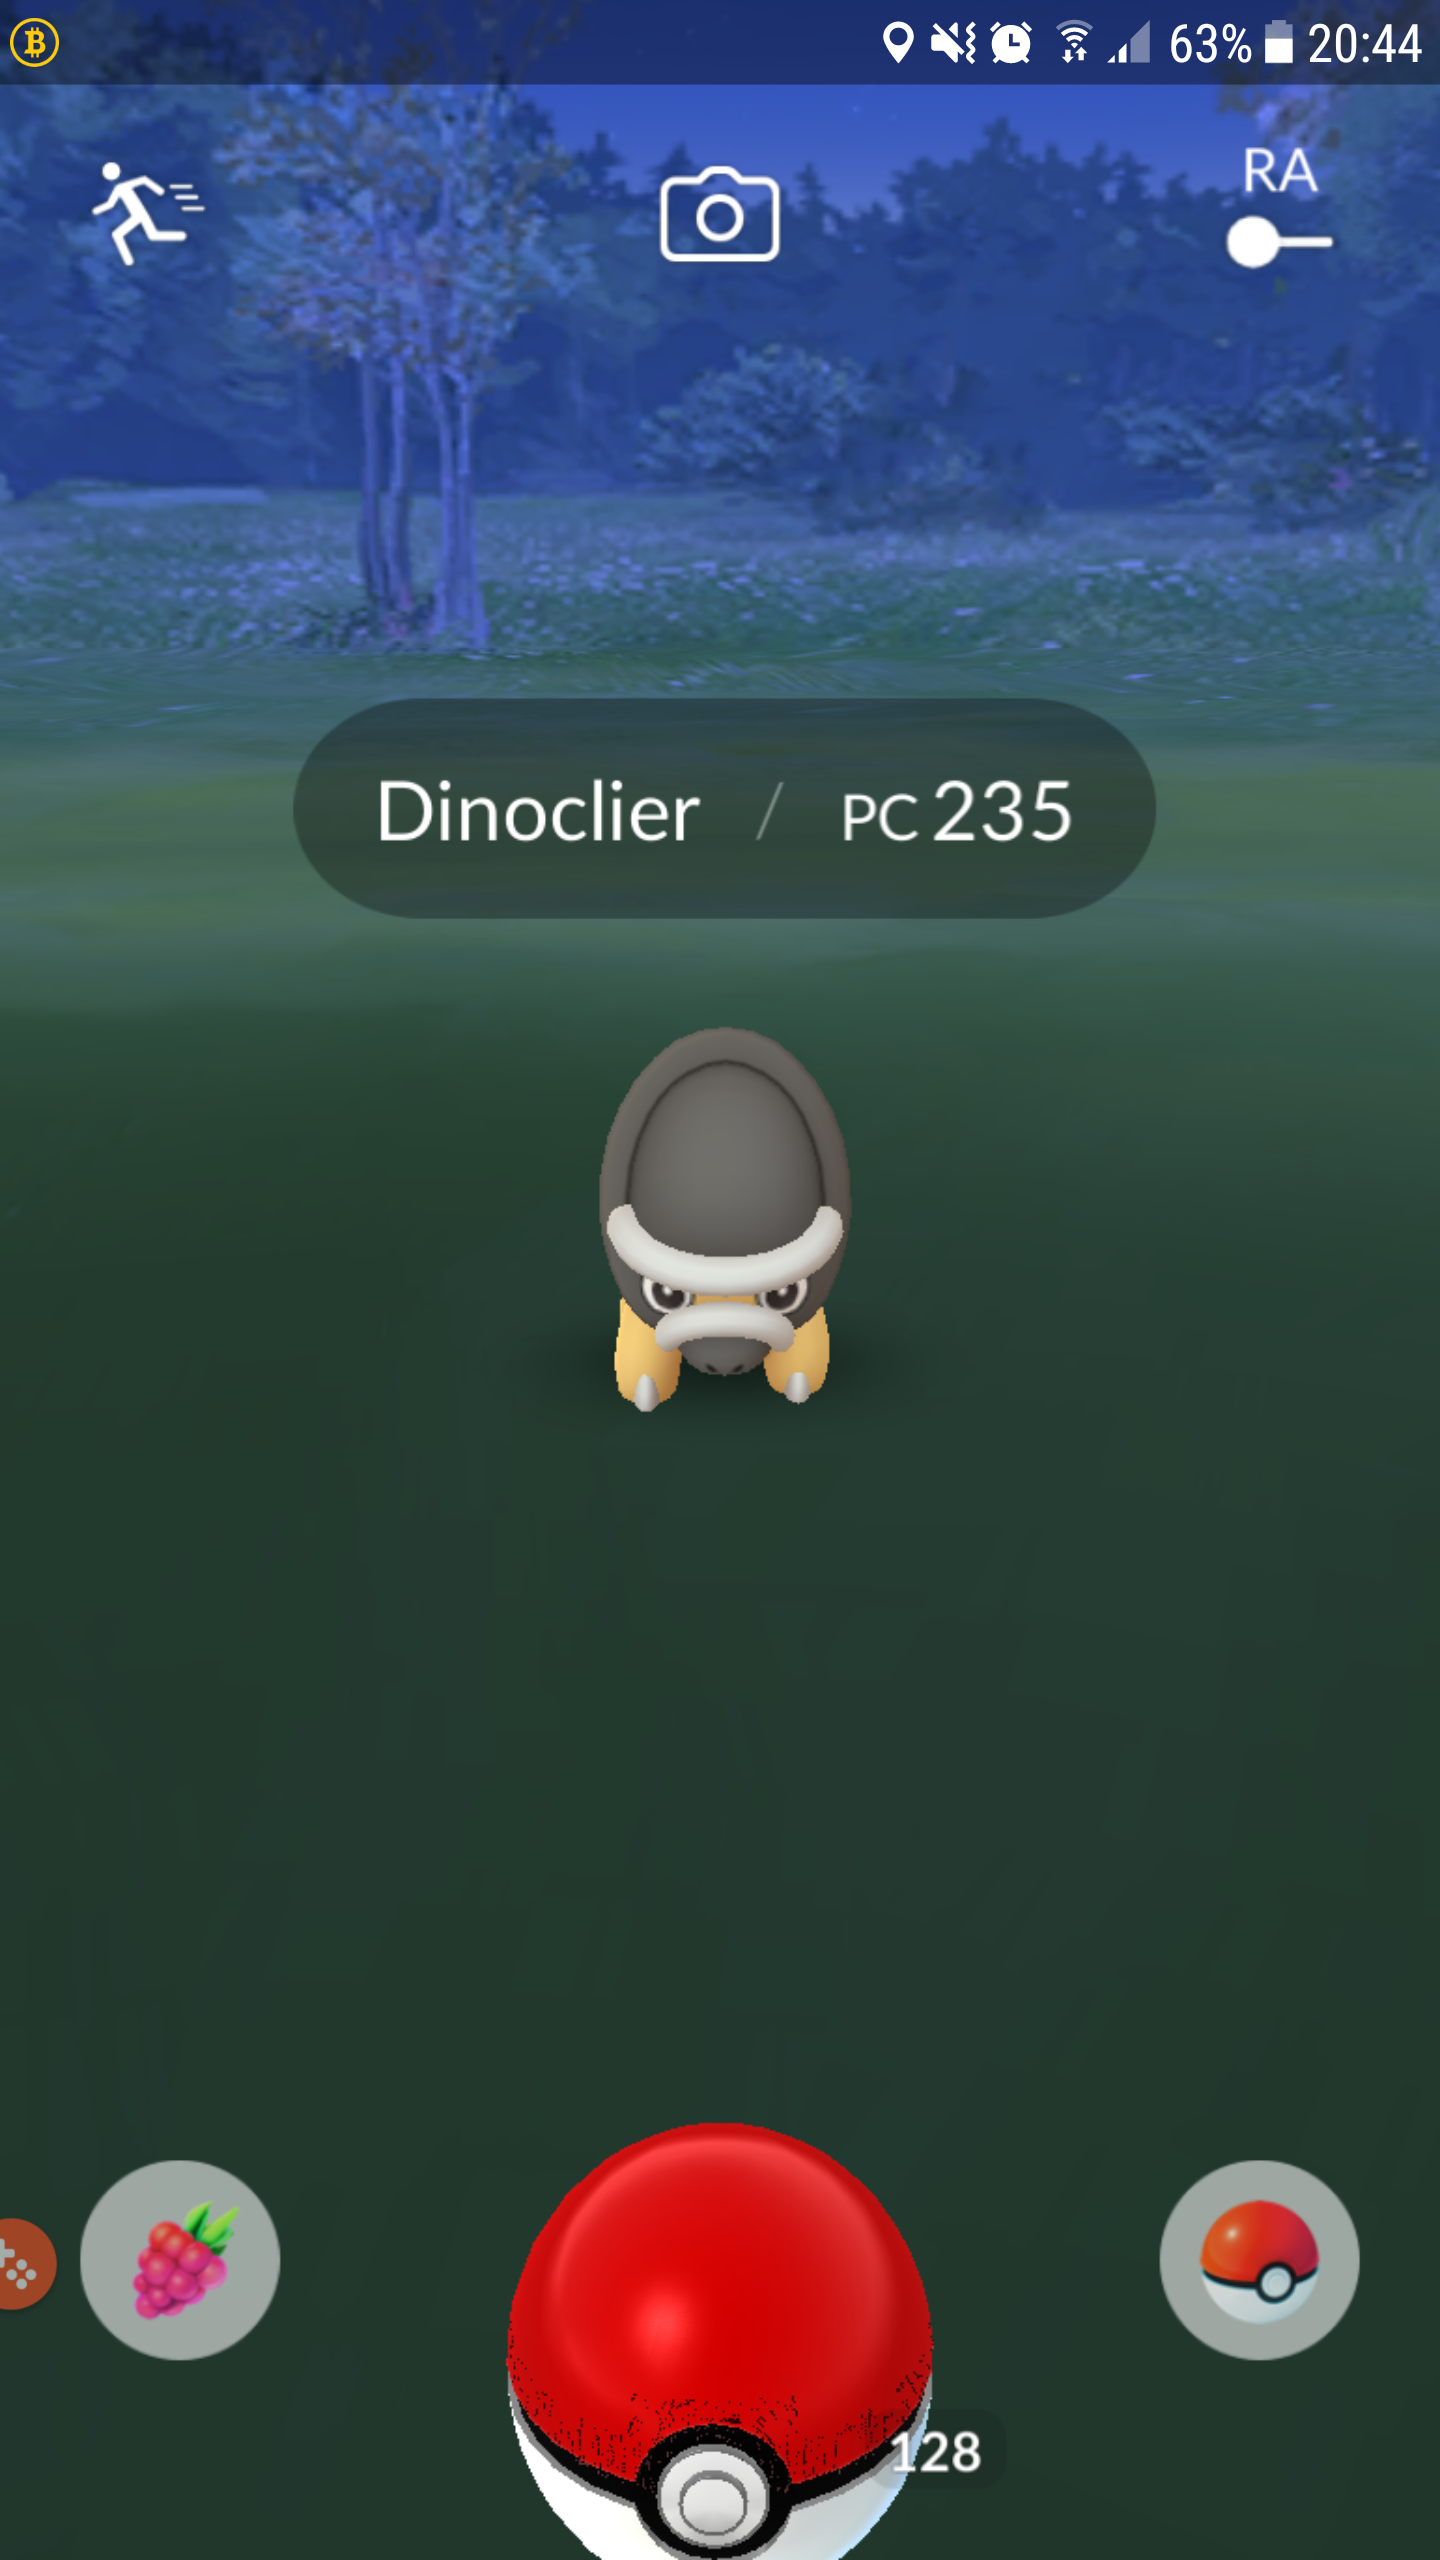 Pokémon Go - Dinoclier - Pc 235